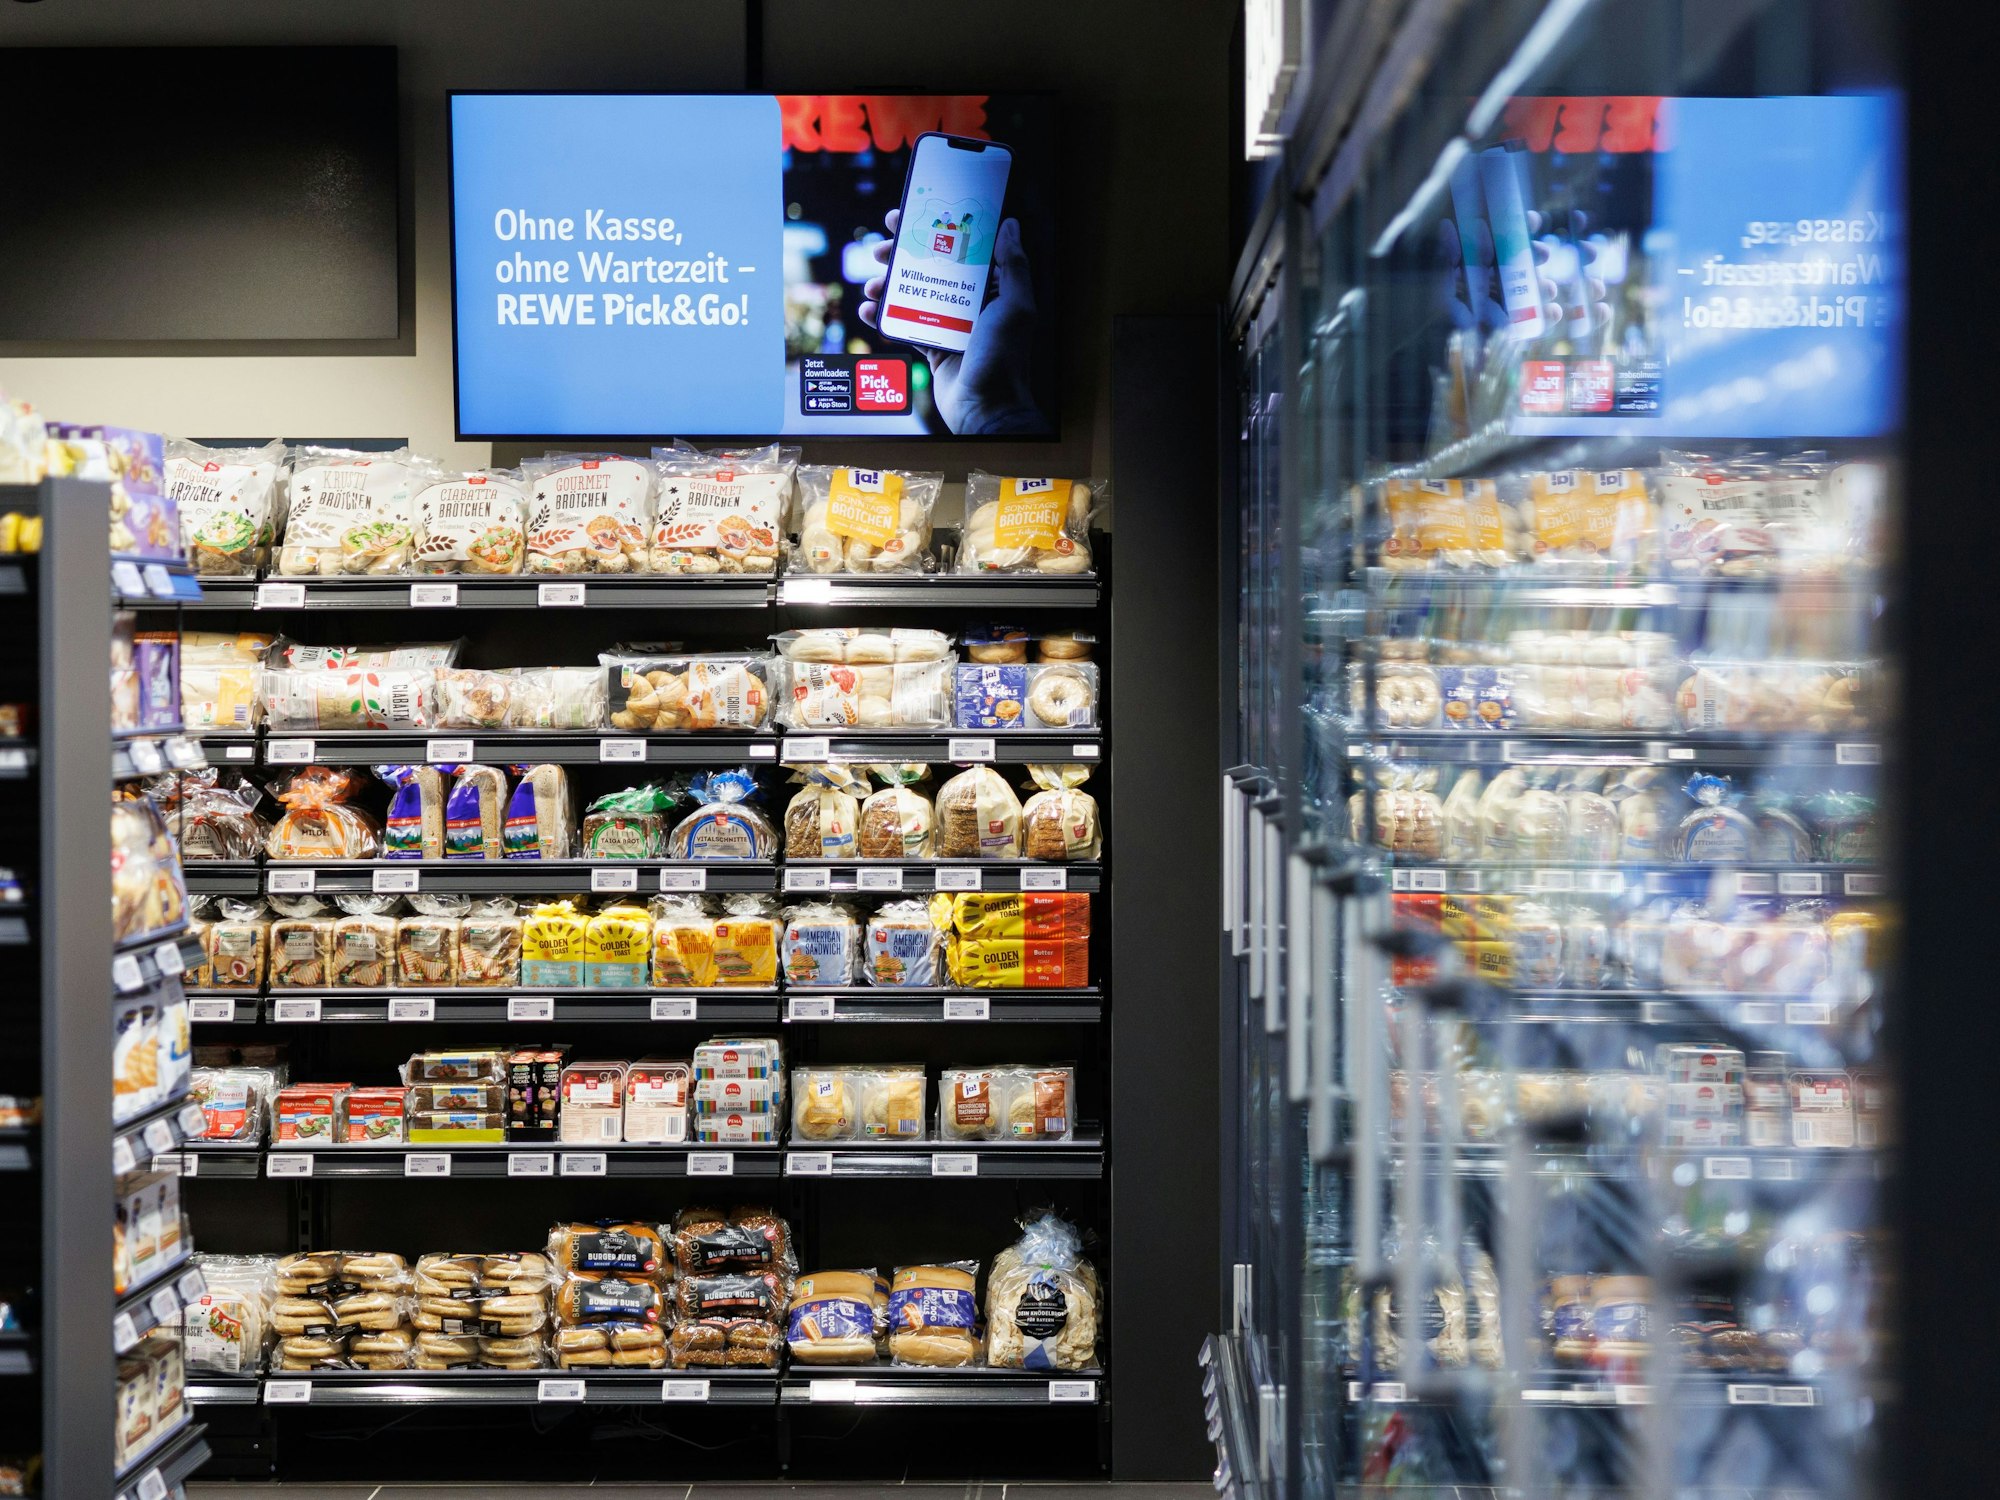 Regale mit Lebensmitteln stehtn in der ersten vollautomatischen Rewe Pick&Go Filiale in München.